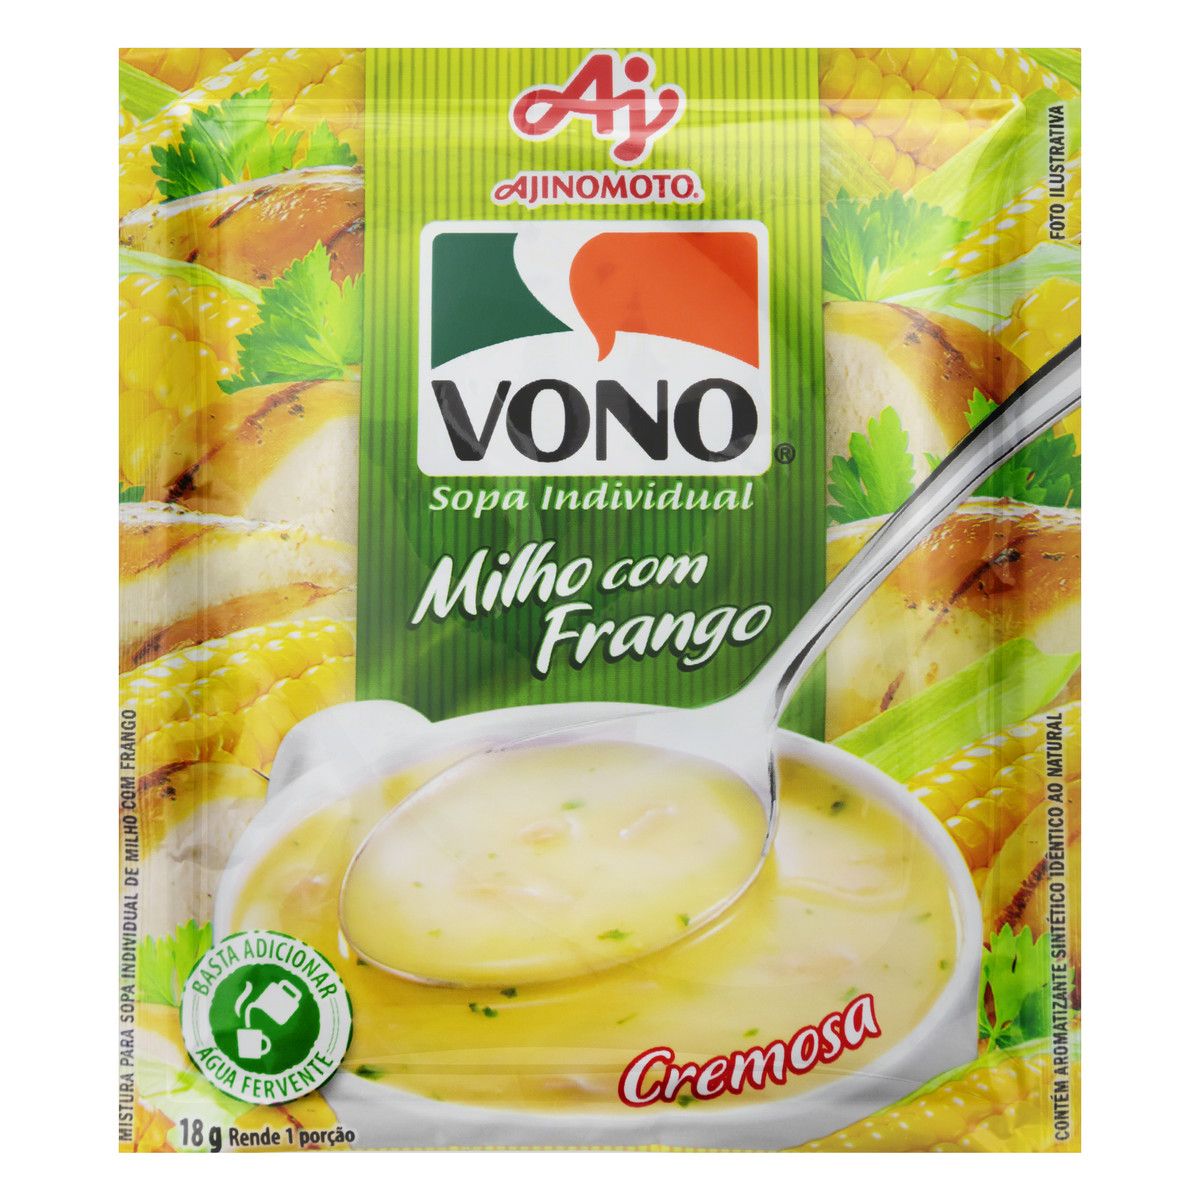 Sopa Individual Cremosa Milho com Frango Vono Pacote 18g image number 0